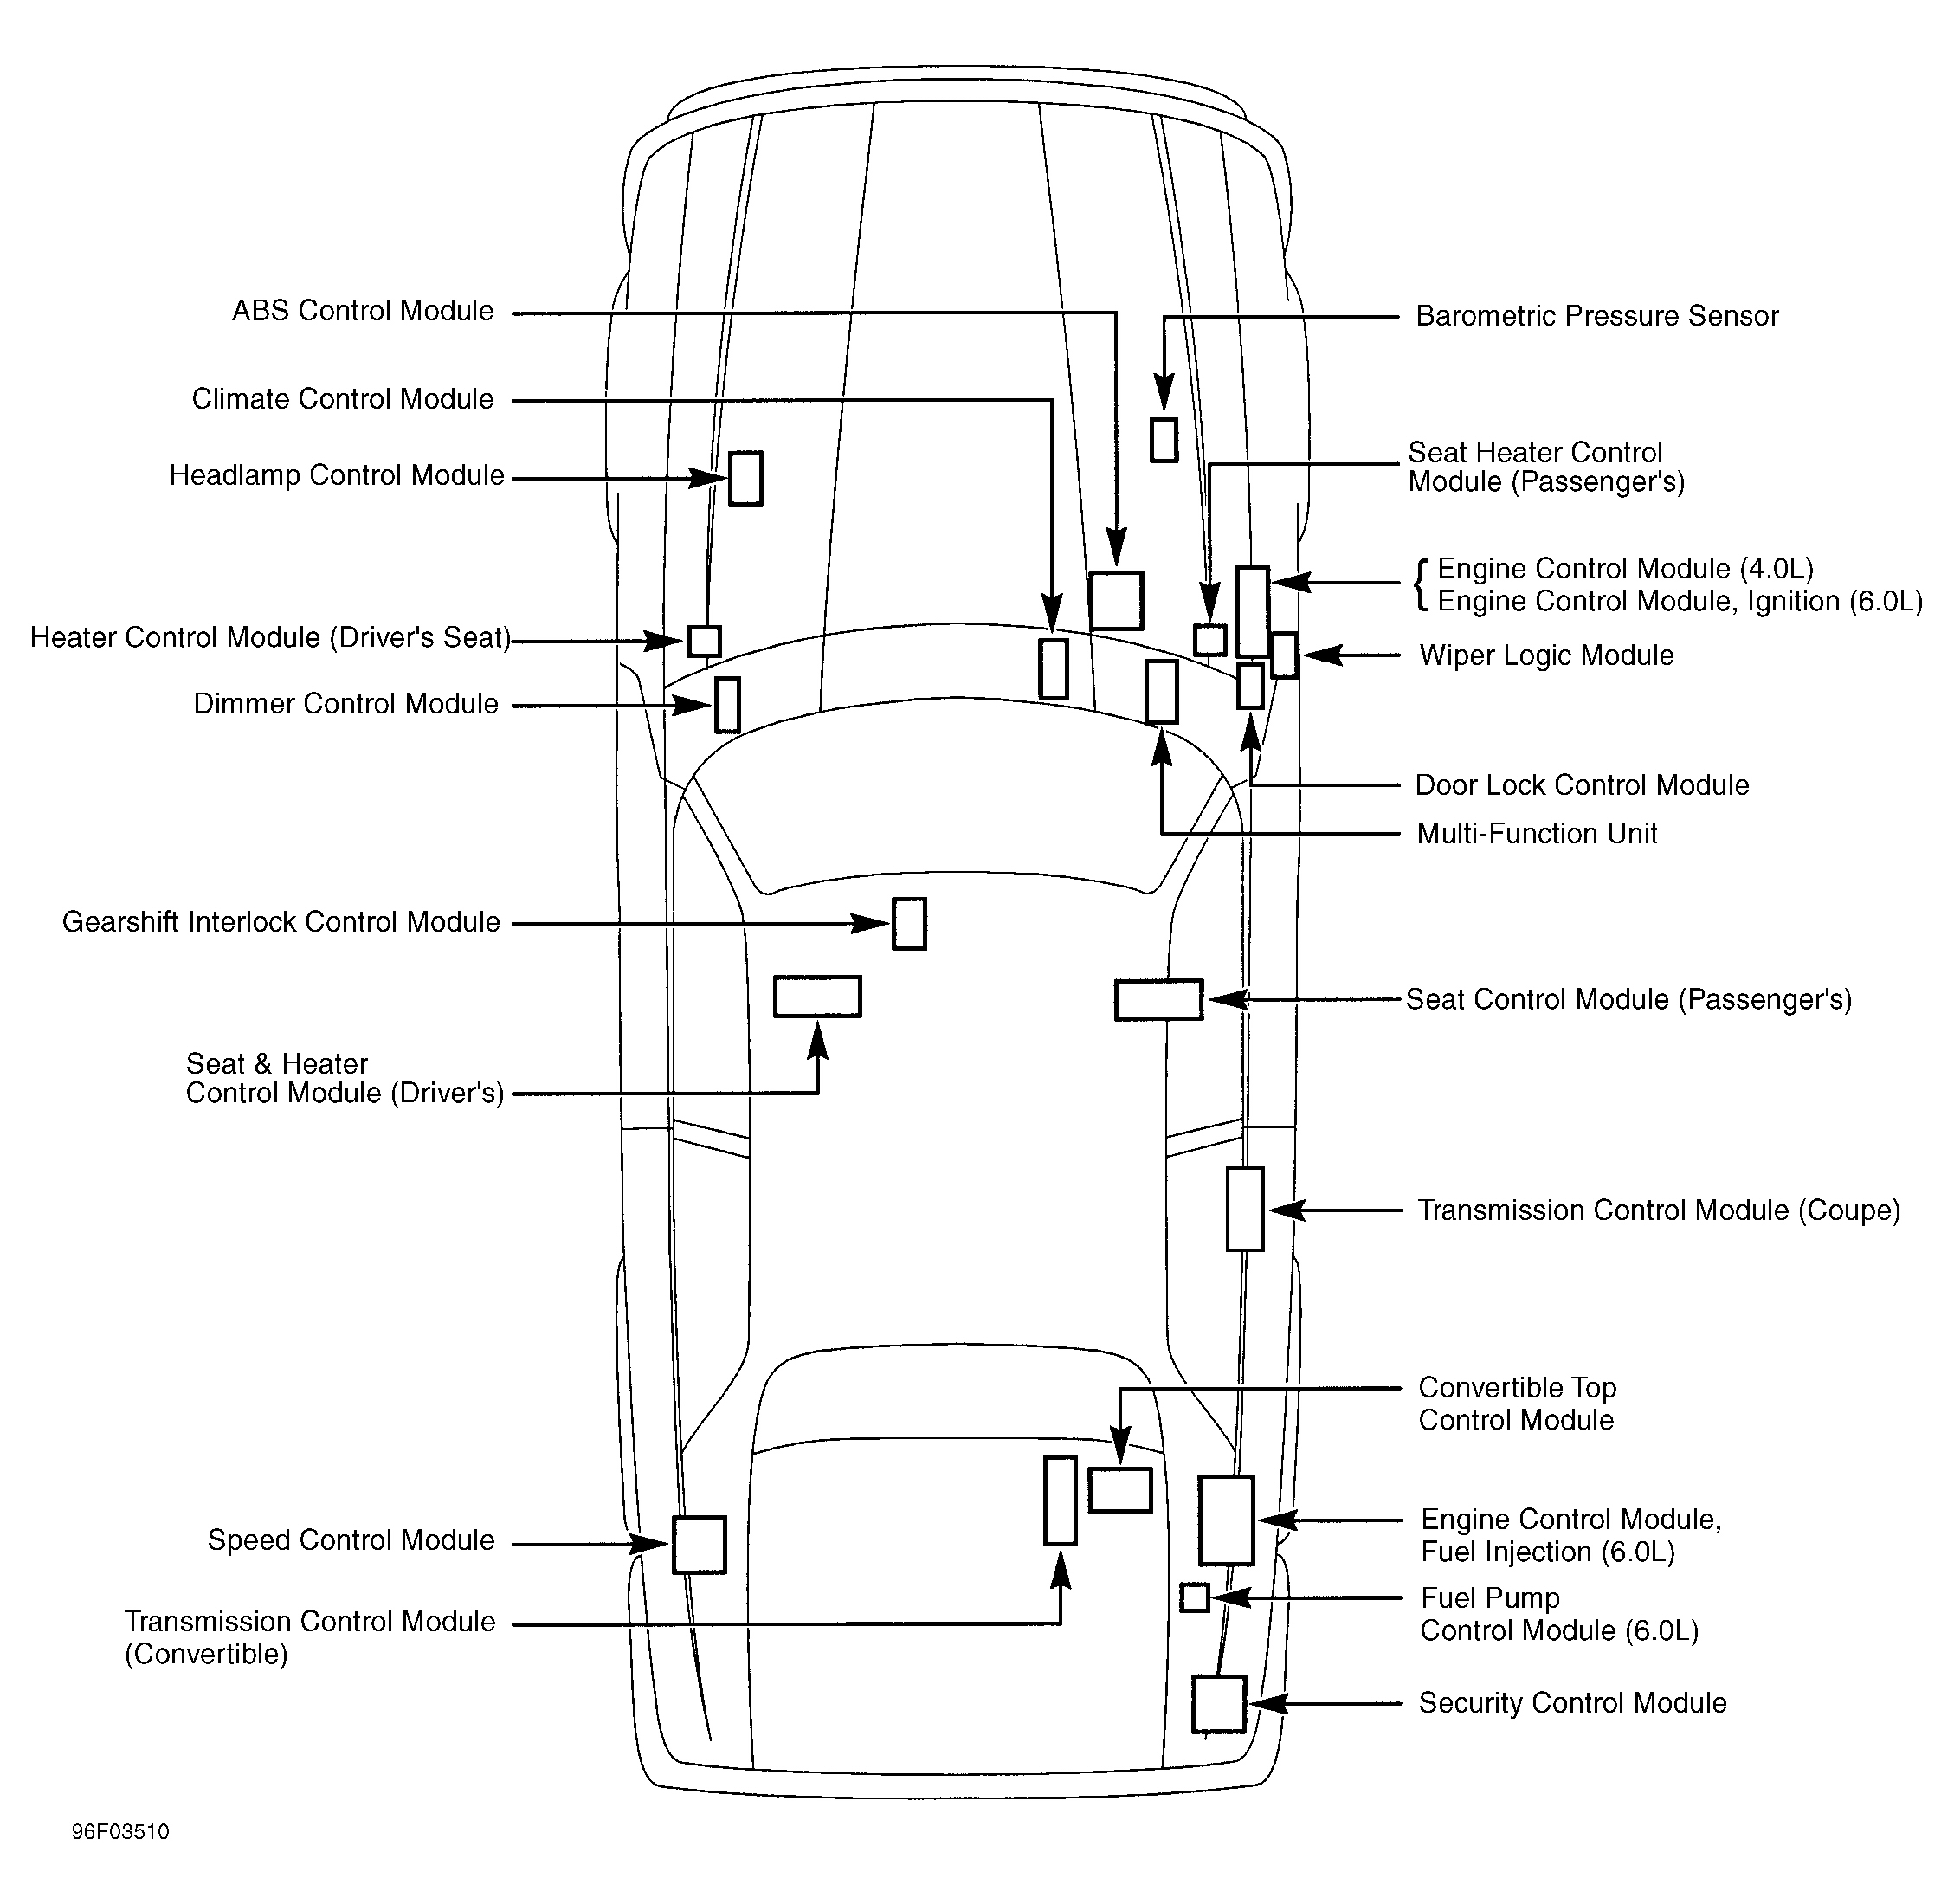 Jaguar XJS 1995 - Component Locations -  Vehicle Overview